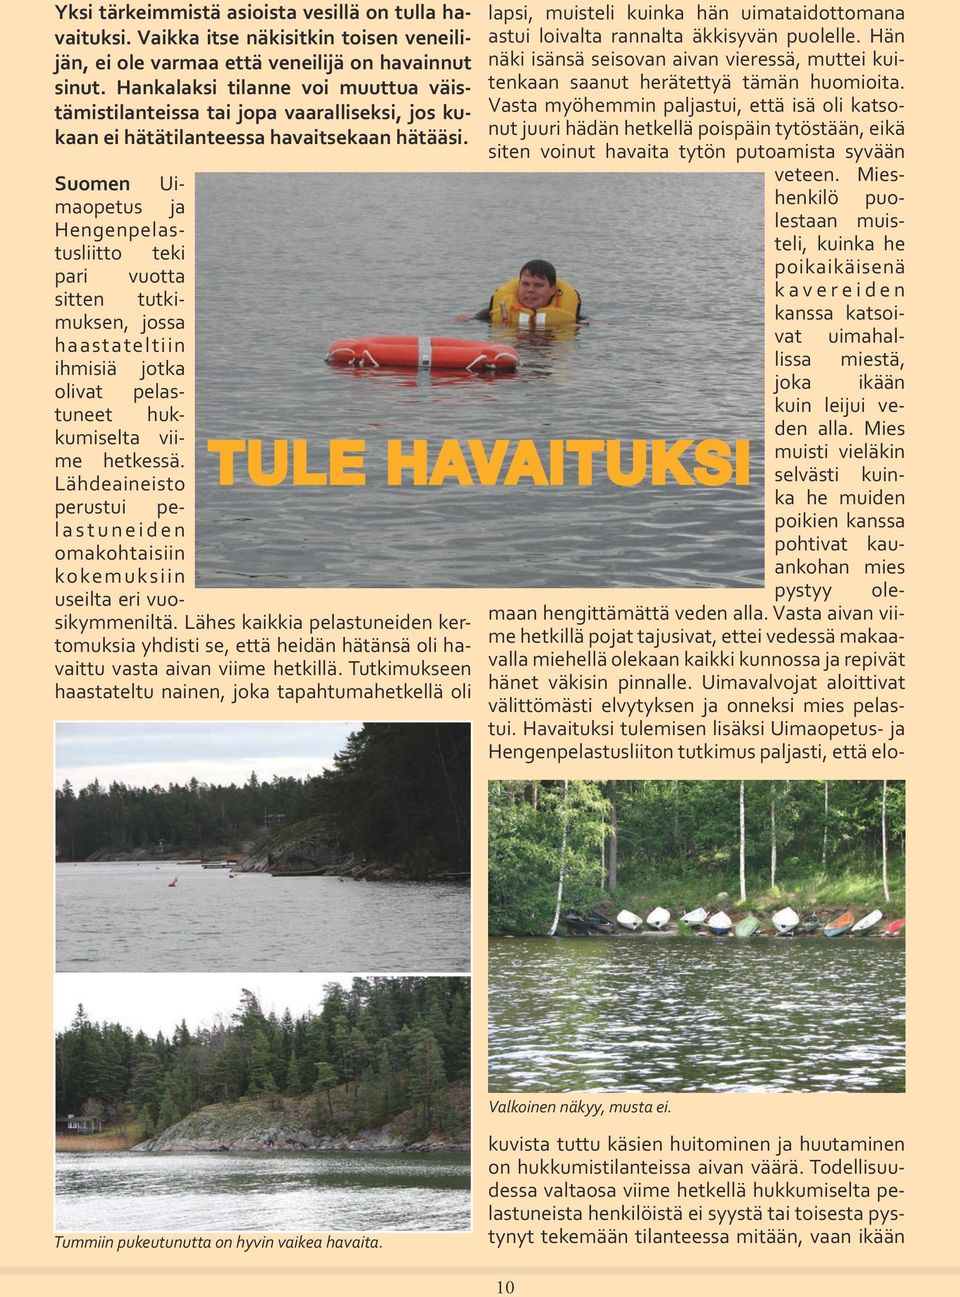 Suomen Uimaopetus ja Hengenpelastusliitto teki pari vuotta sitten tutkimuksen, jossa haastateltiin ihmisiä jotka olivat pelastuneet hukkumiselta viime hetkessä.